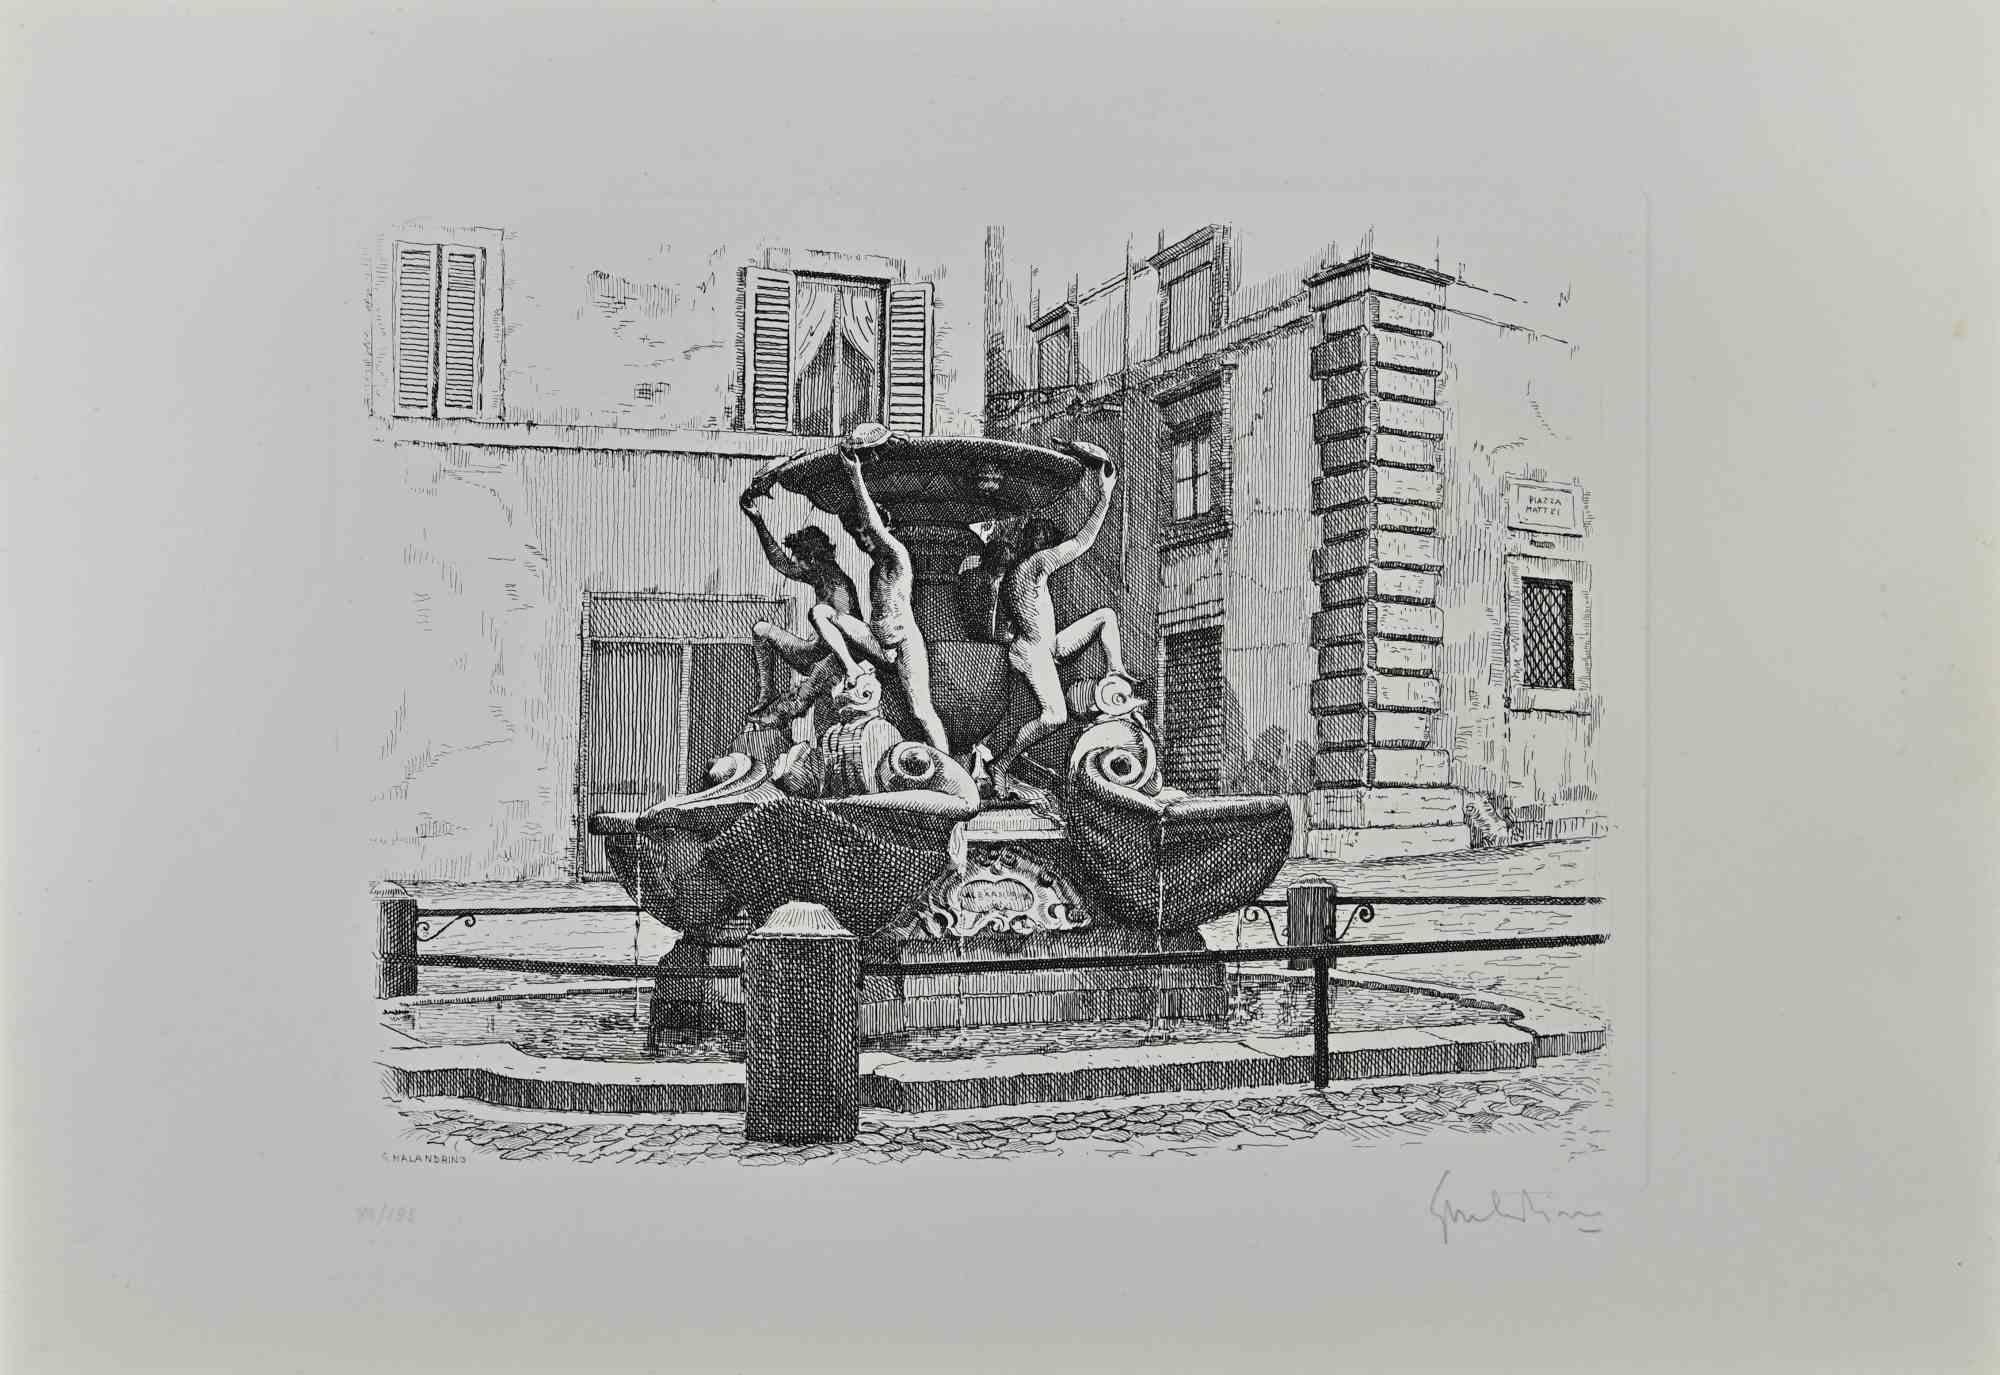 Turtle Fountain - Rome est une œuvre d'art originale réalisée par Giuseppe Malandrino.

Impression originale à l'eau-forte.

Signé à la main par l'artiste au crayon dans le coin inférieur droit.

Édition numérotée de 99 exemplaires.

Bonnes